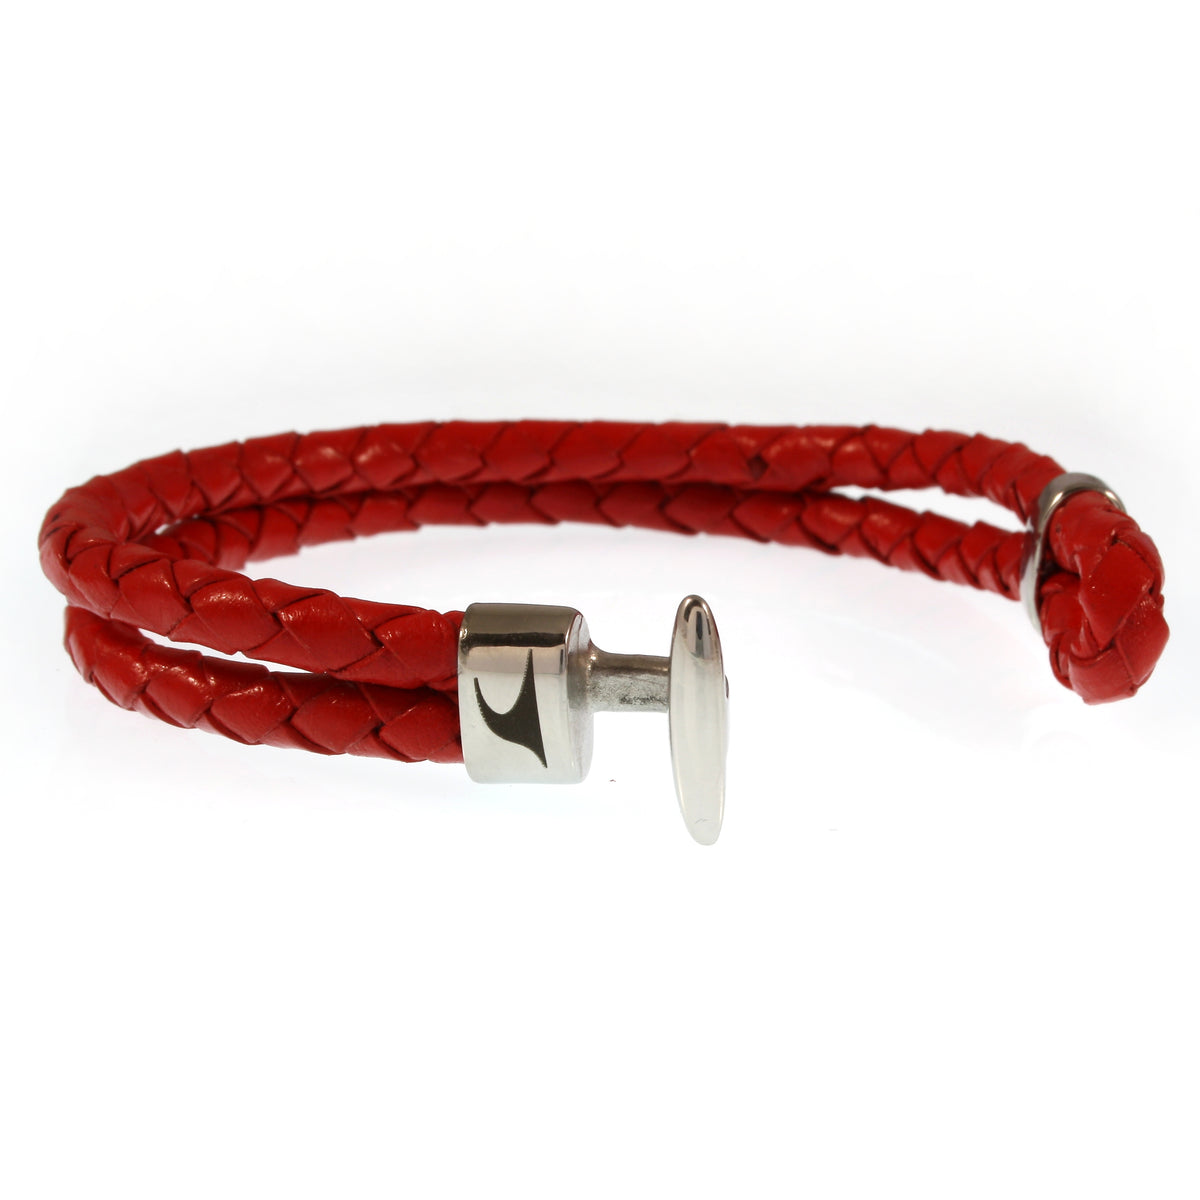 Damen-Leder-Armband-Aruba-rot-geflochten-Edelstahlverschluss-offen-wavepirate-shop-f